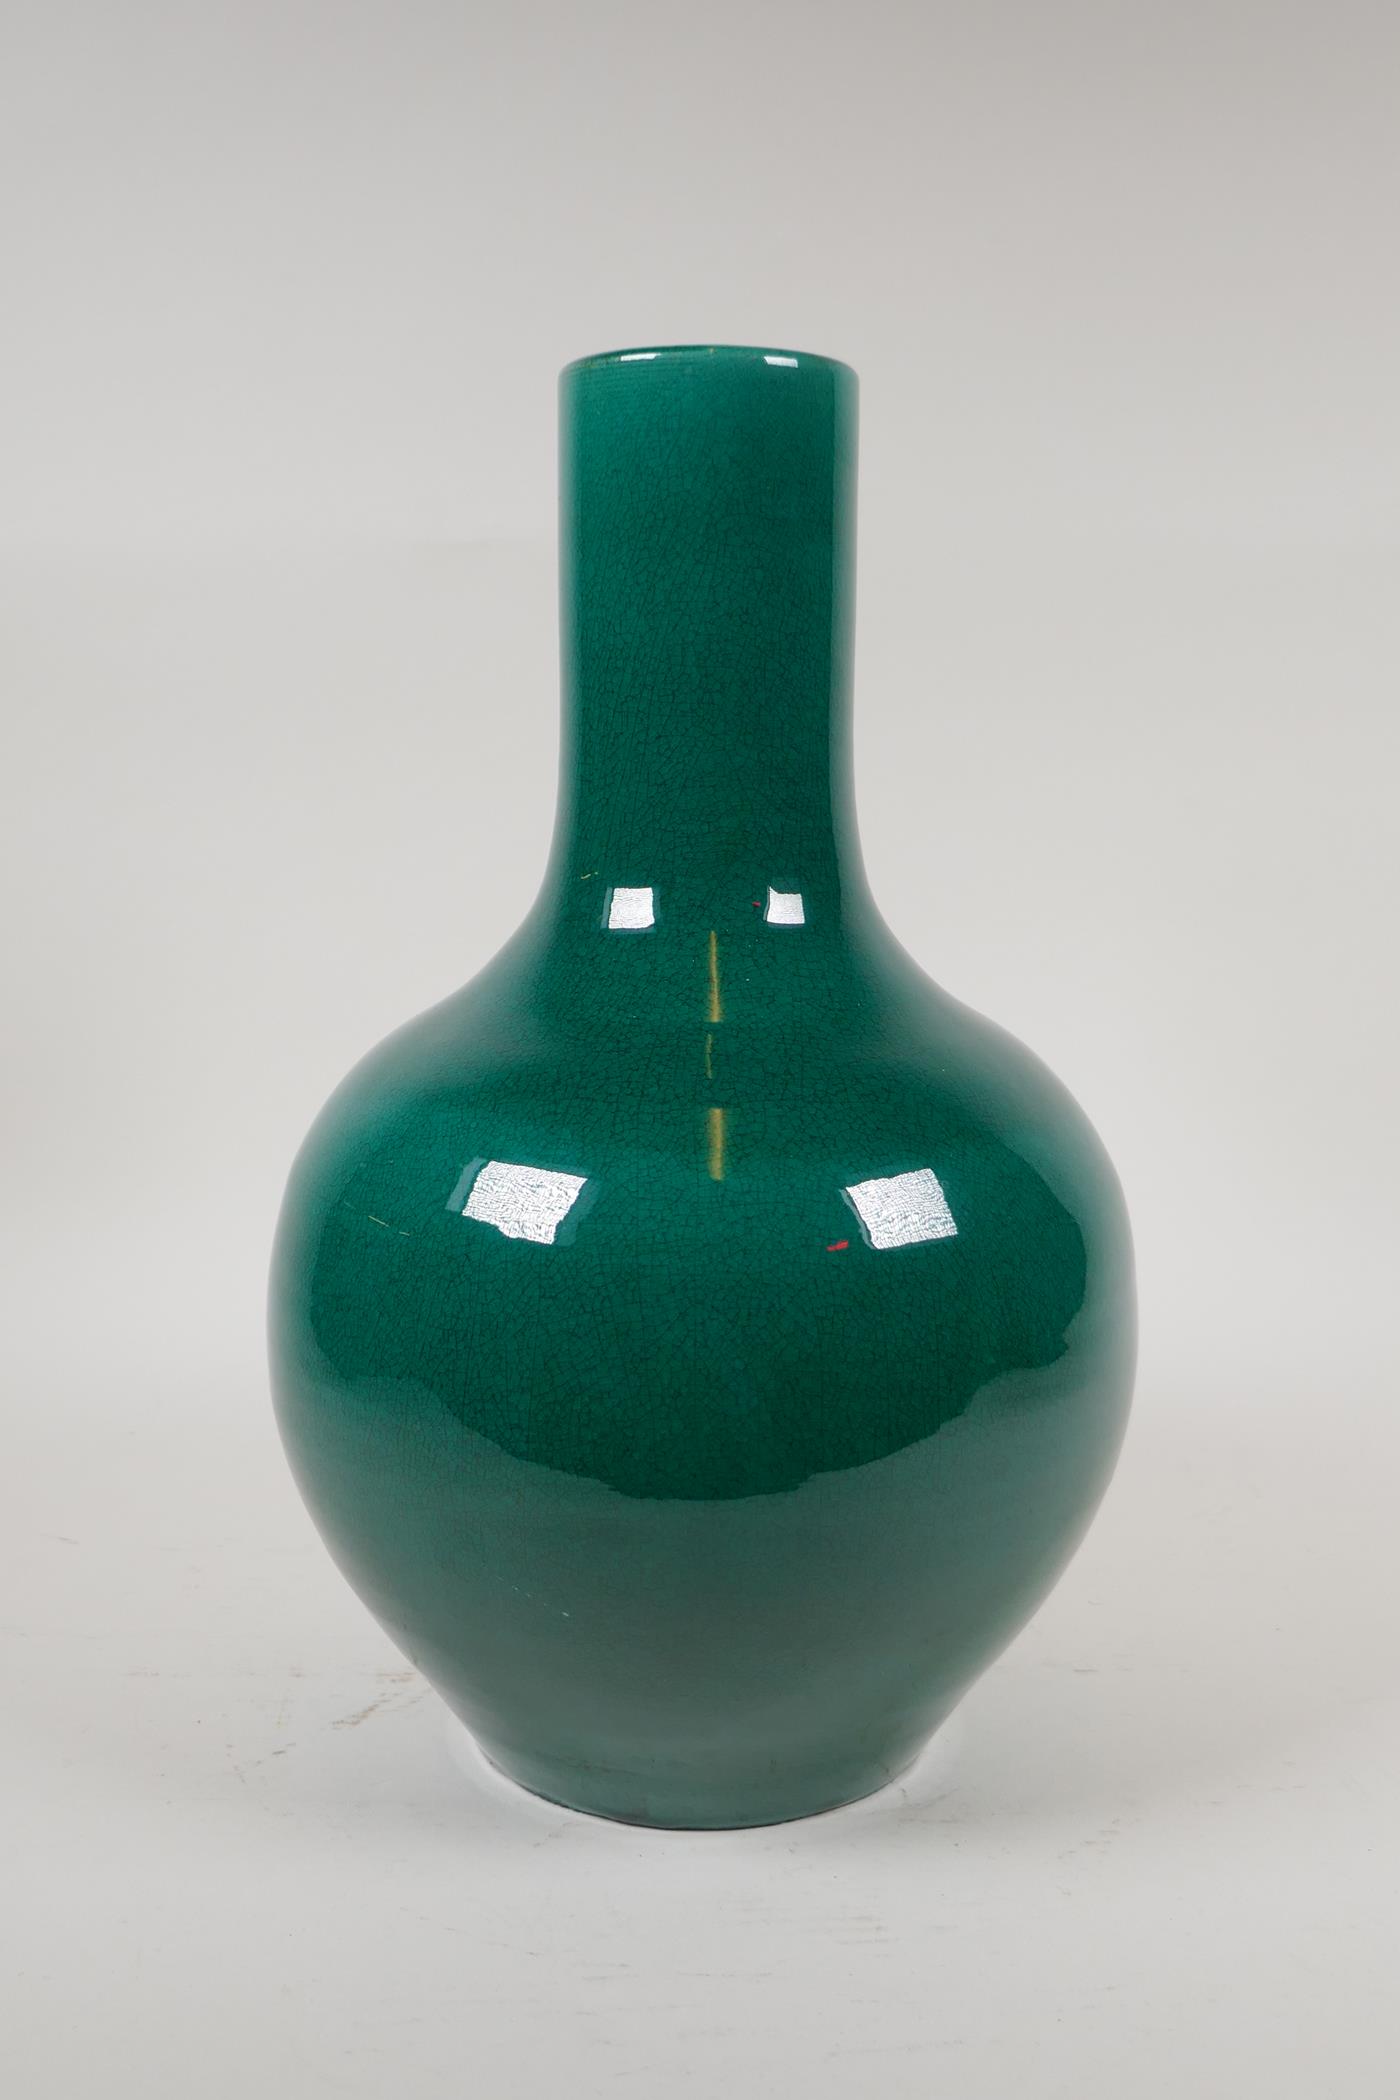 A Chinese emerald green crackle glazed porcelain bottle vase, 13" high - Image 2 of 8